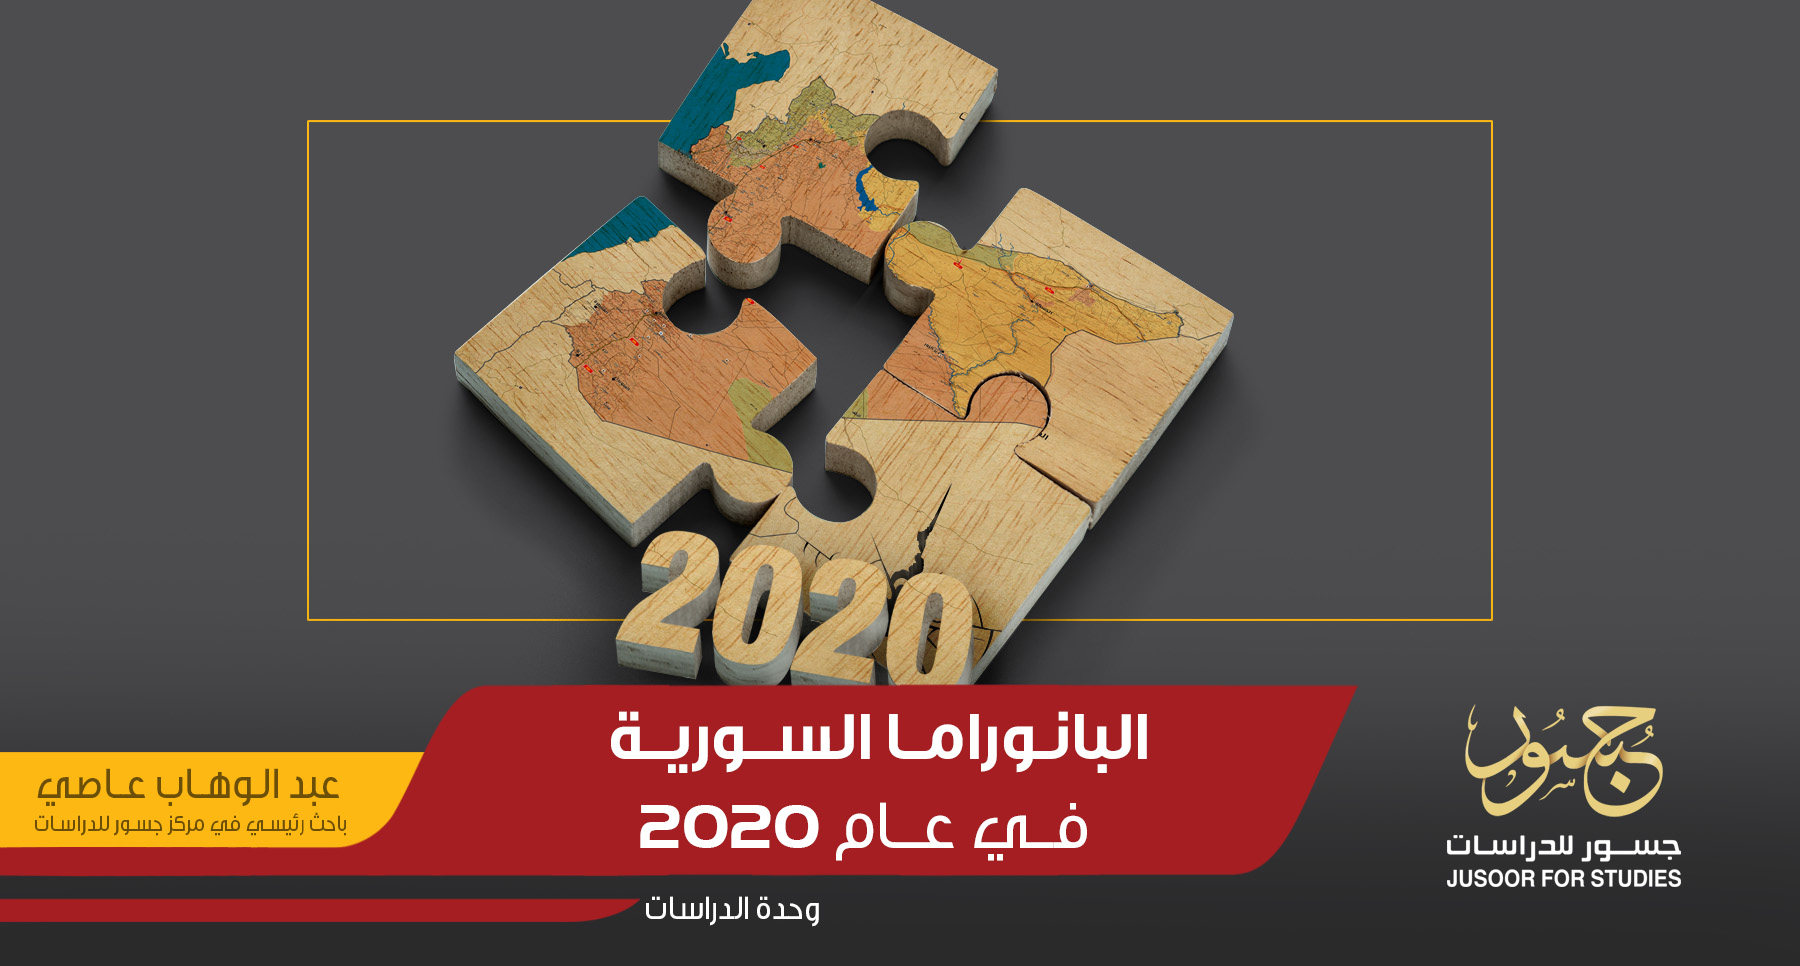 البانوراما السورية في عام 2020